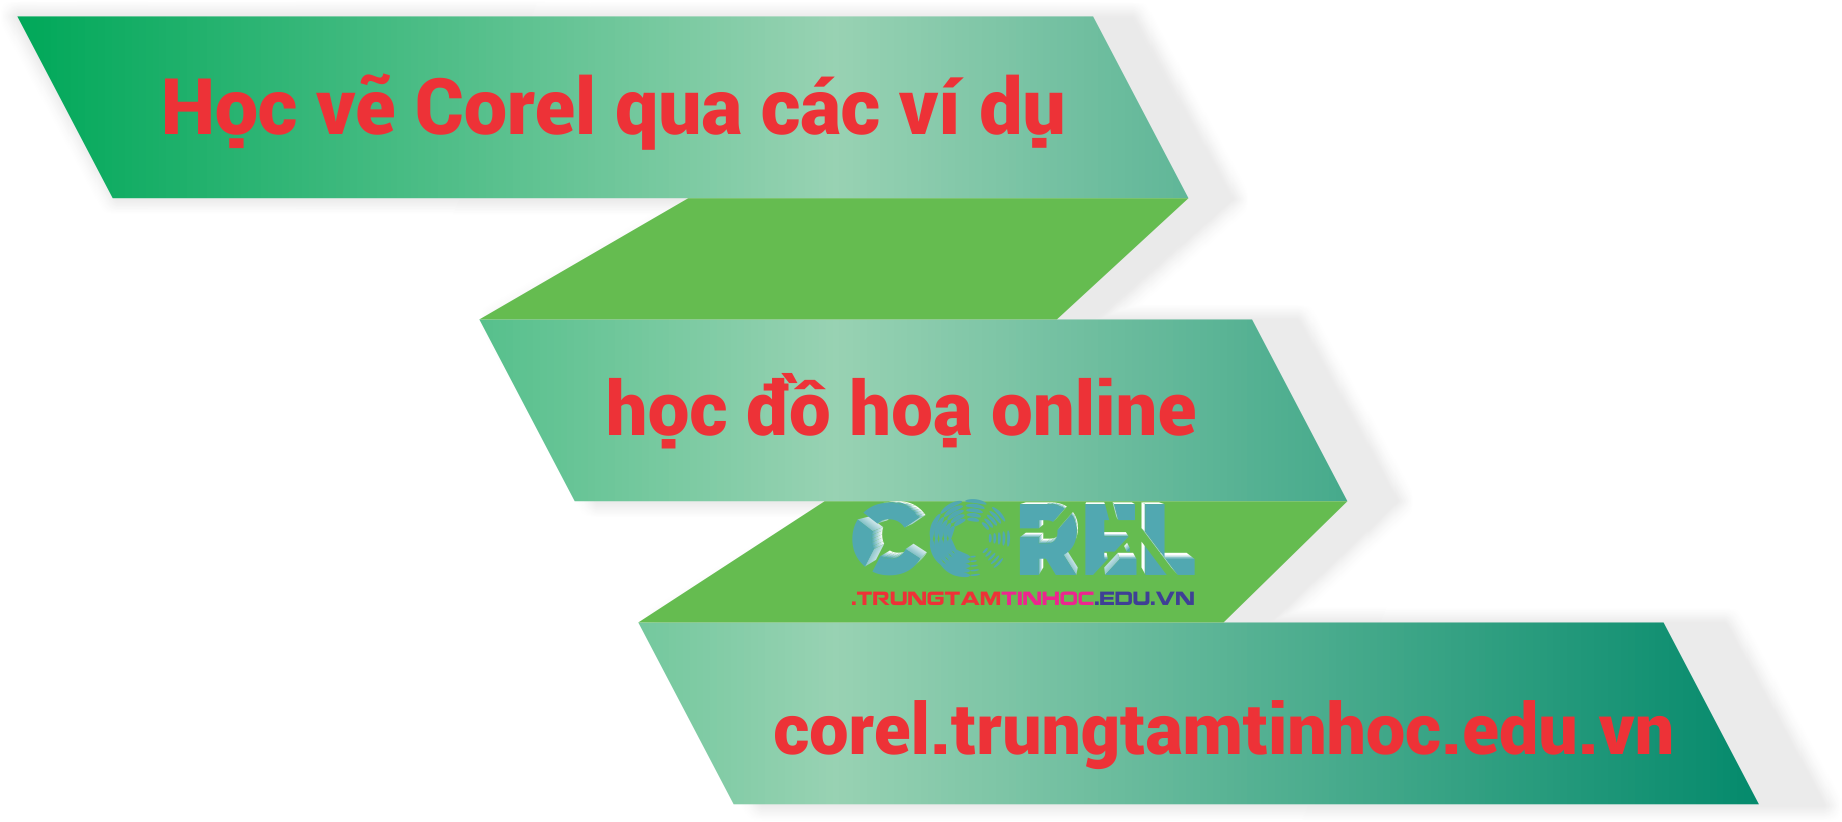 corel online